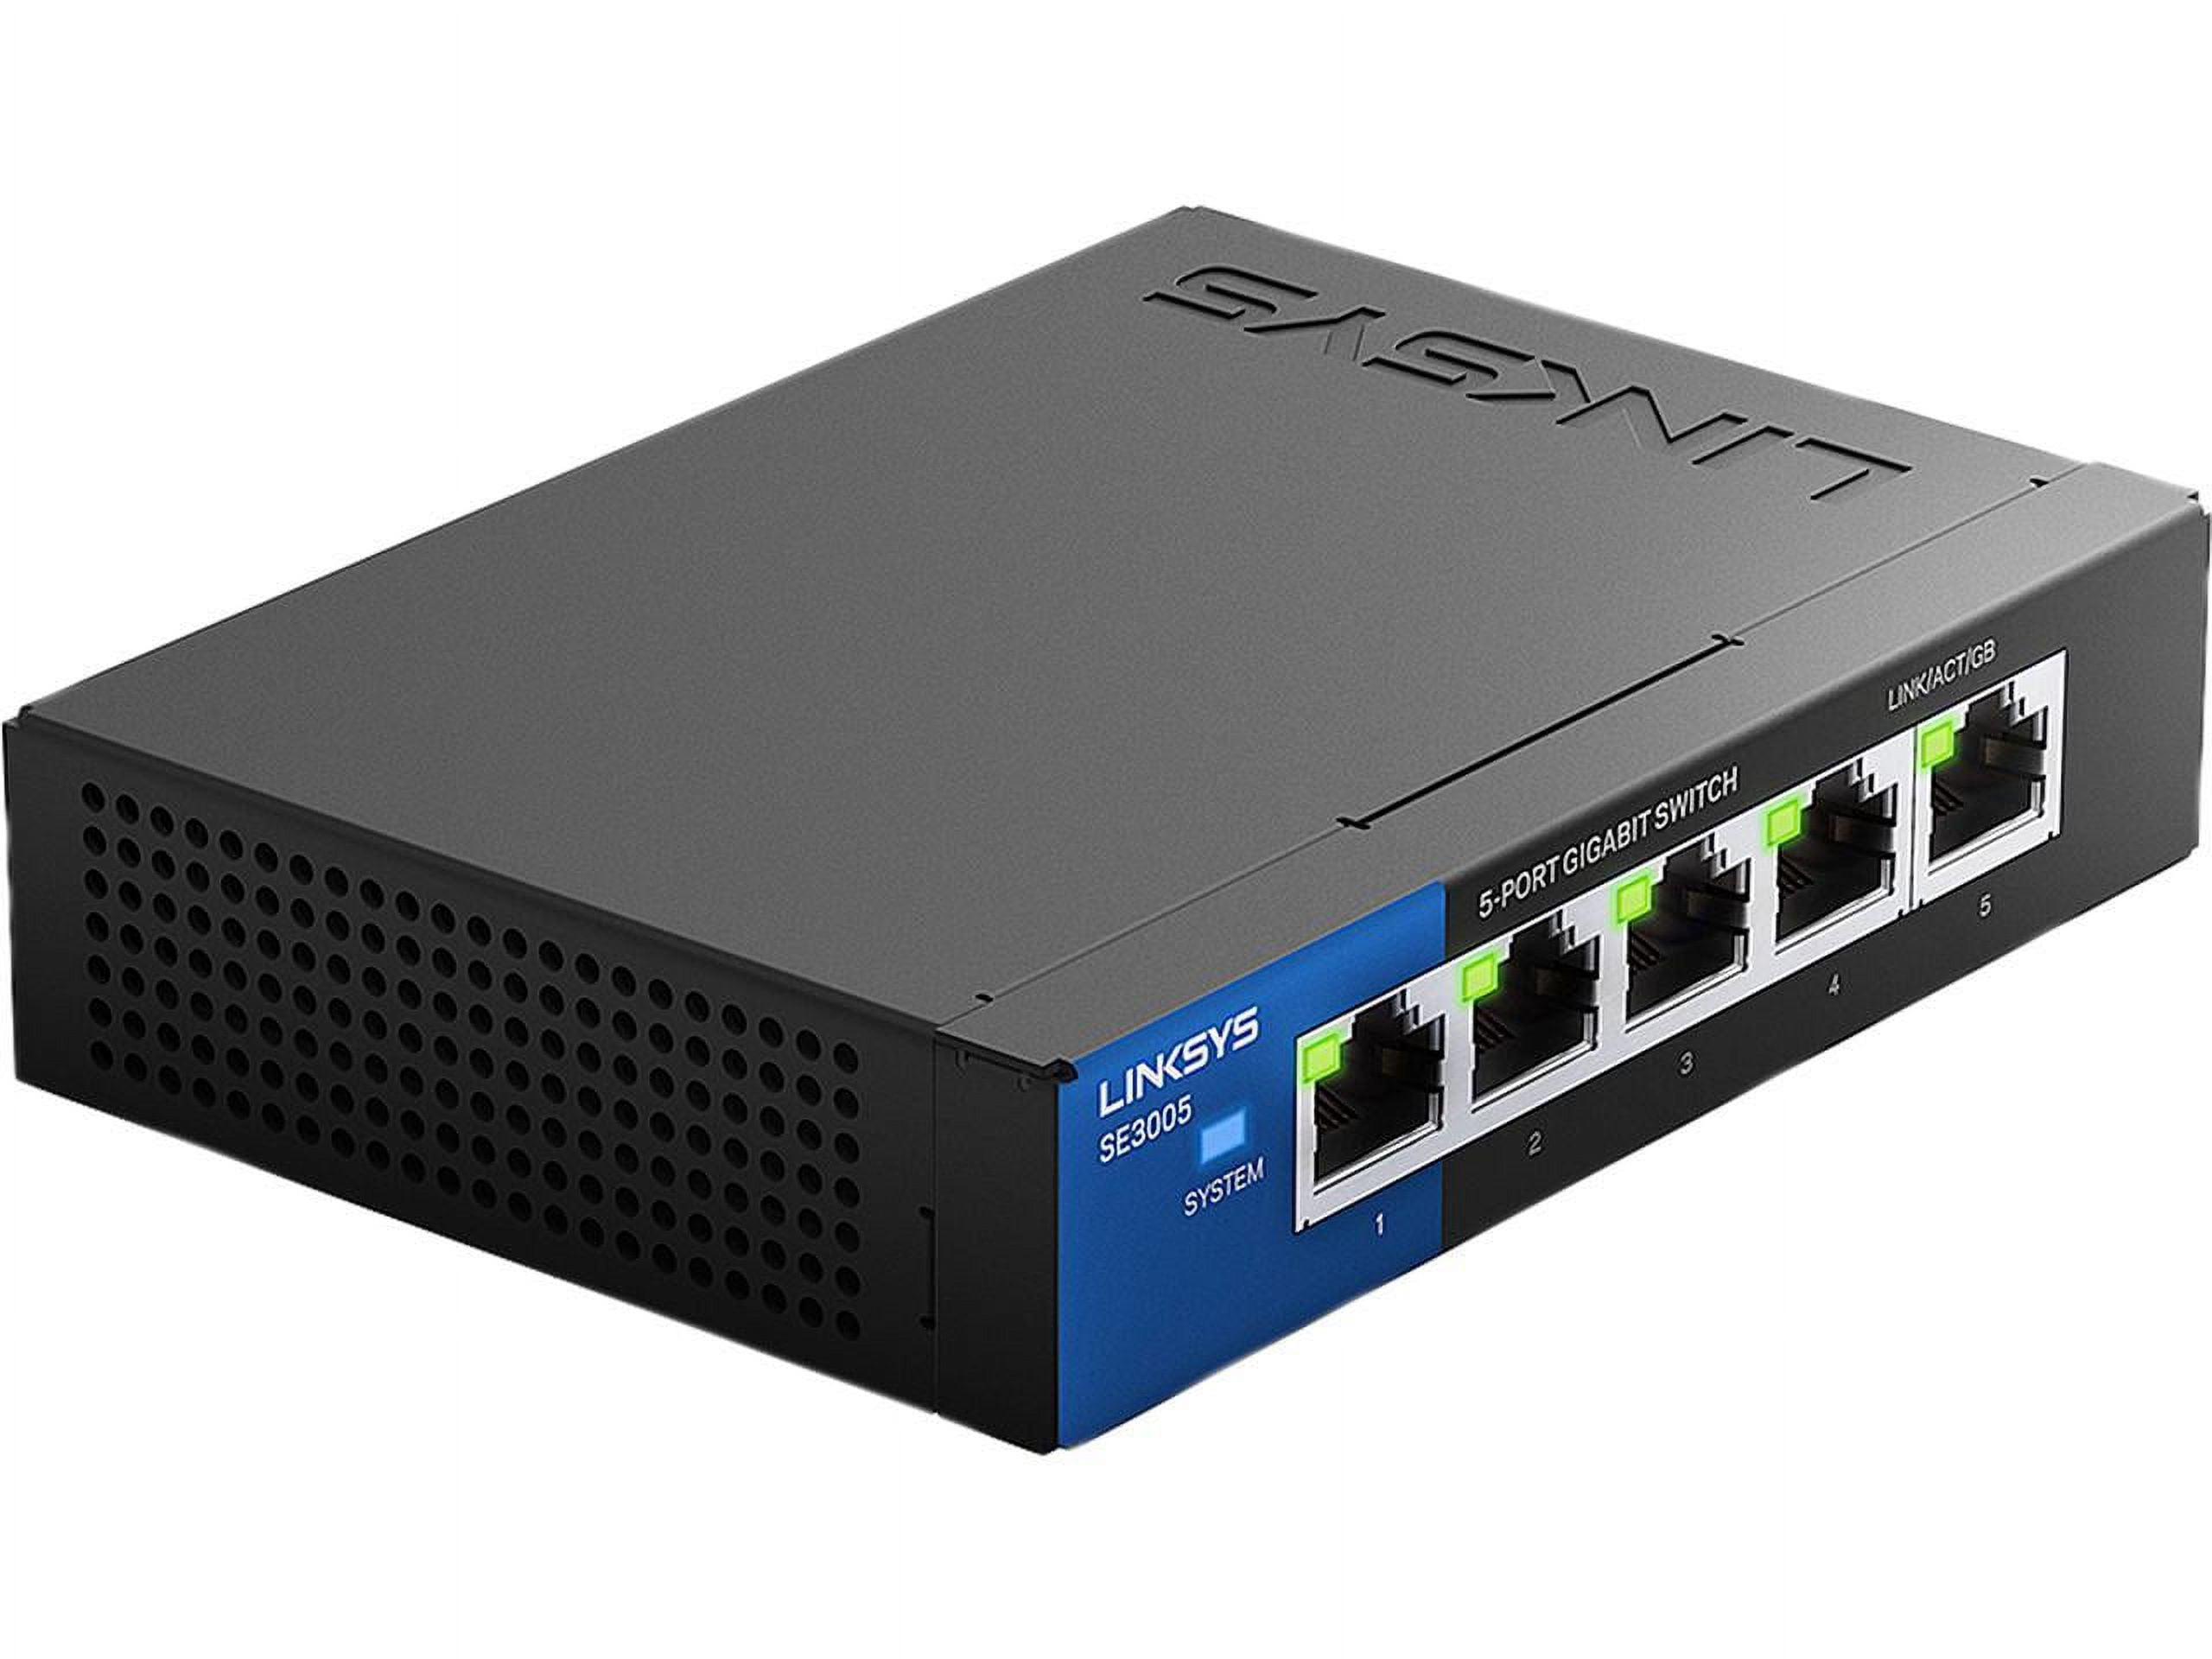 Tripp Lite 8-Port Gigabit Ethernet Switch, Desktop, Unmanaged Network Switch  10/100/1000 Mbps, RJ45, Metal (NG8) 